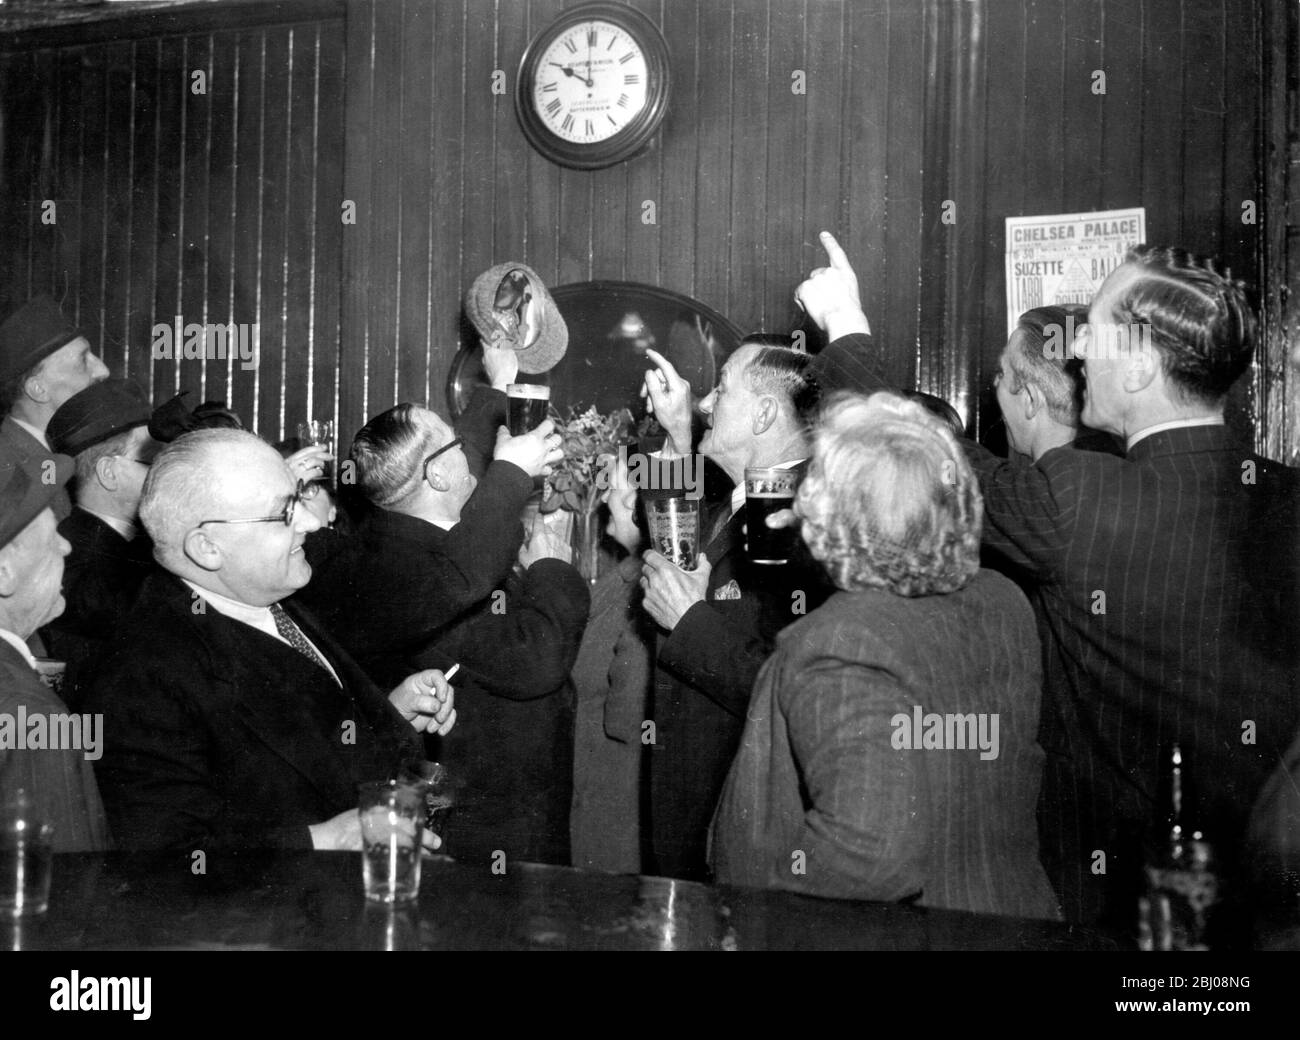 Pub a London's Dry Belt per rimanere aperto fino alle 22:30. – nell'area di concessione licenze di Kensington che copre Chelsea, Fulham e Hammersmith, dove l'orario di chiusura è stato alle 22, è stata concessa una mezz'ora in più per fermare la migrazione all'ingrosso di cittadini assetati da una zona all'altra. - orario di chiusura al Wellesley Arms, Sydney St, Chelsea, dove hanno tostato la mezz'ora extra. - 11 maggio 1949 Foto Stock